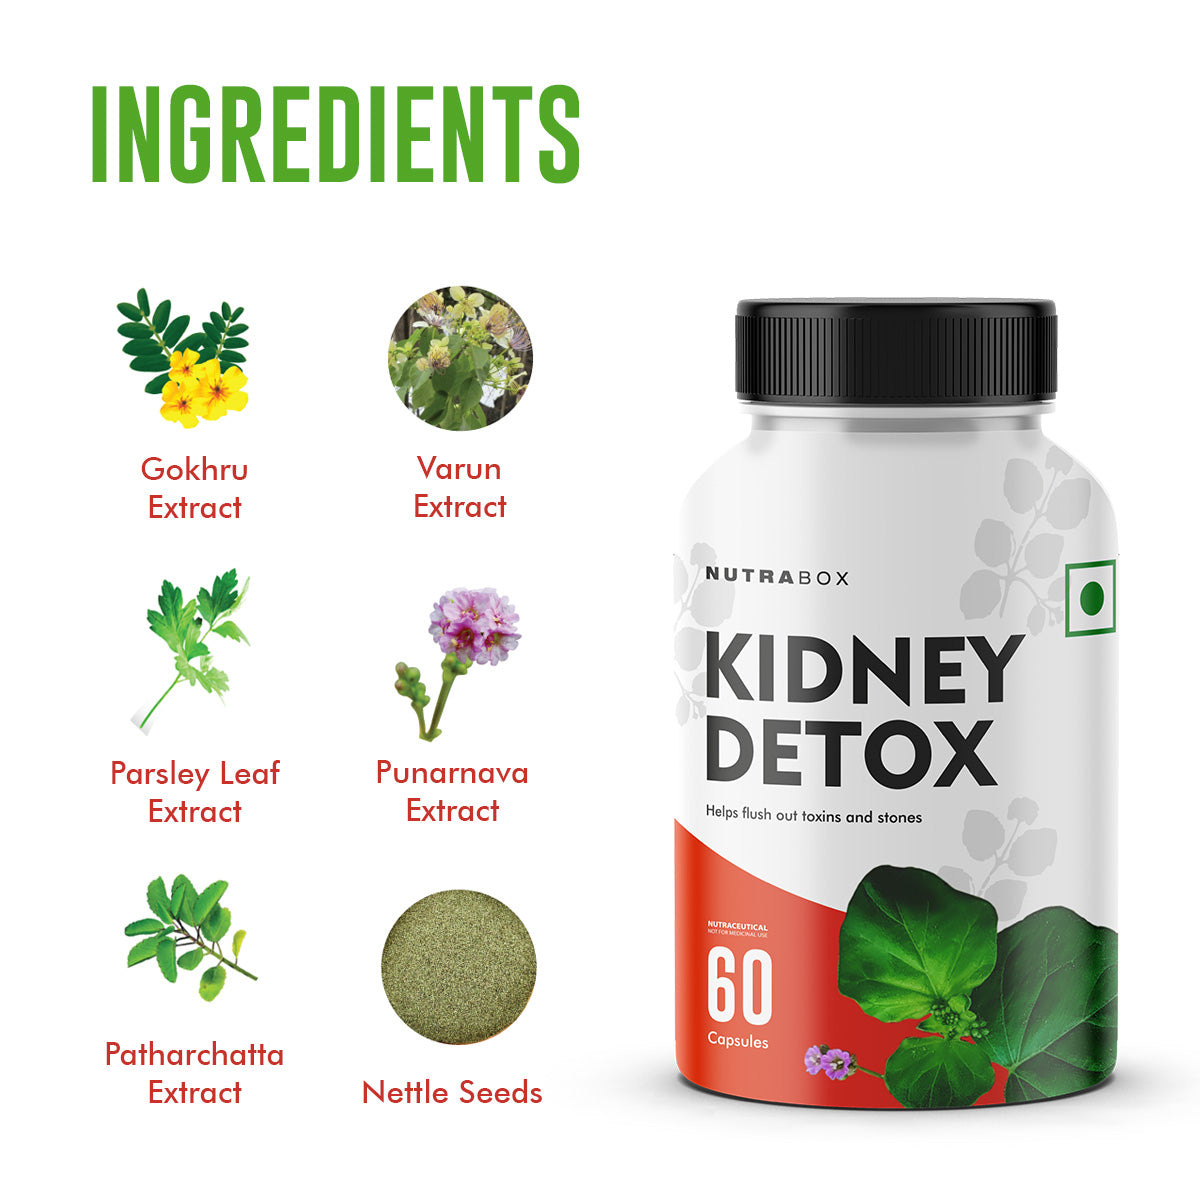 Benefits of Kidney Detox Supplement